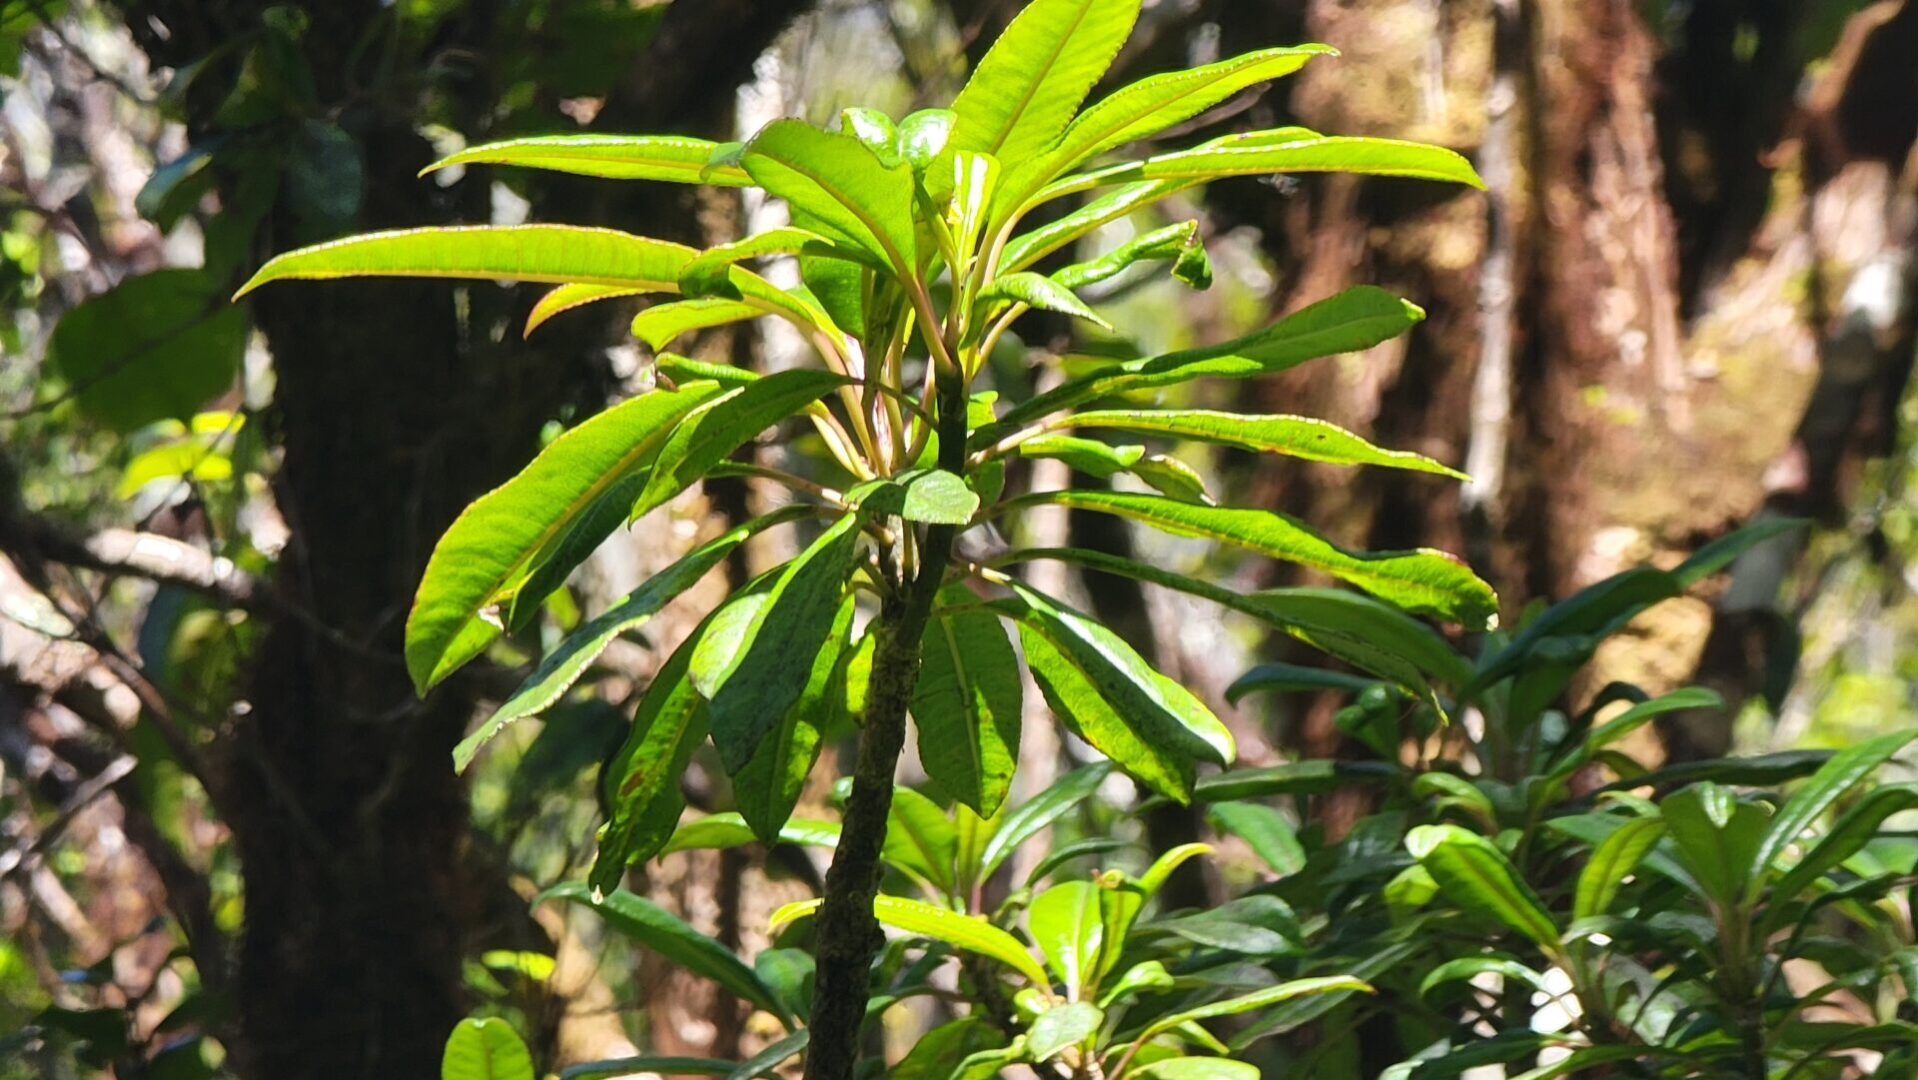 Rare Lobelia Plant